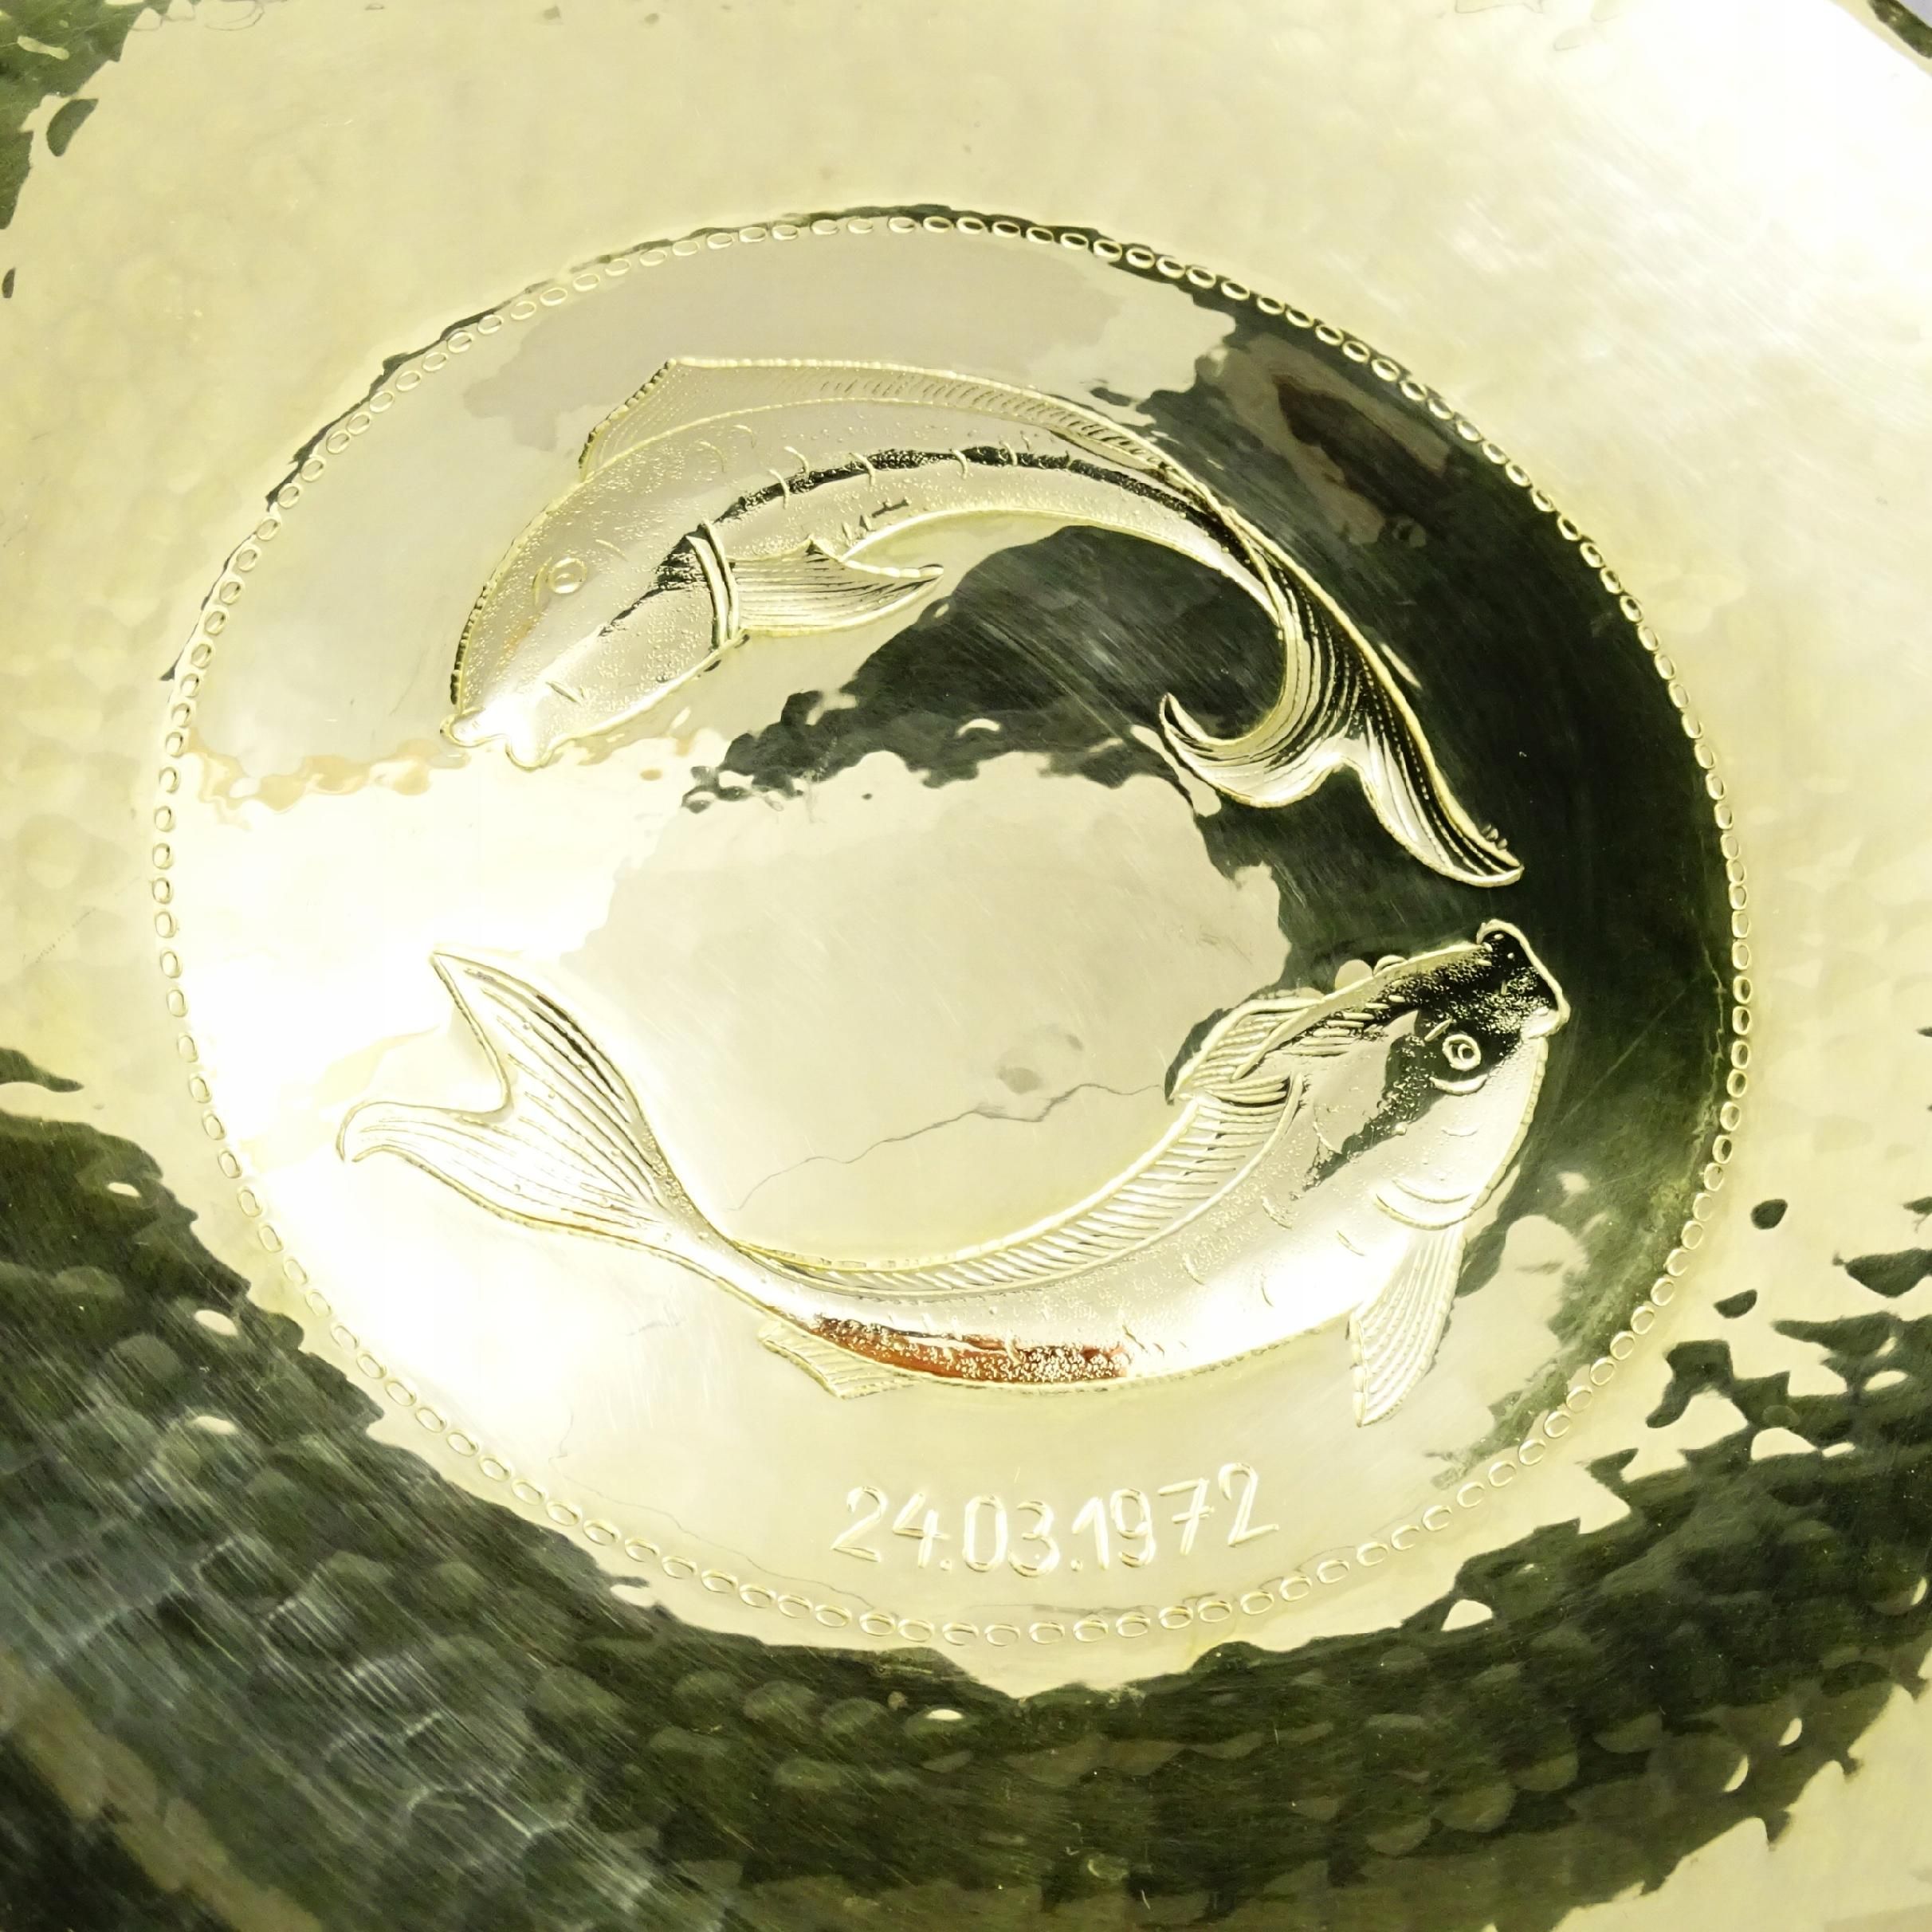 24.03.1972 piękny ręcznie młotkowany talerz naścienny ryby